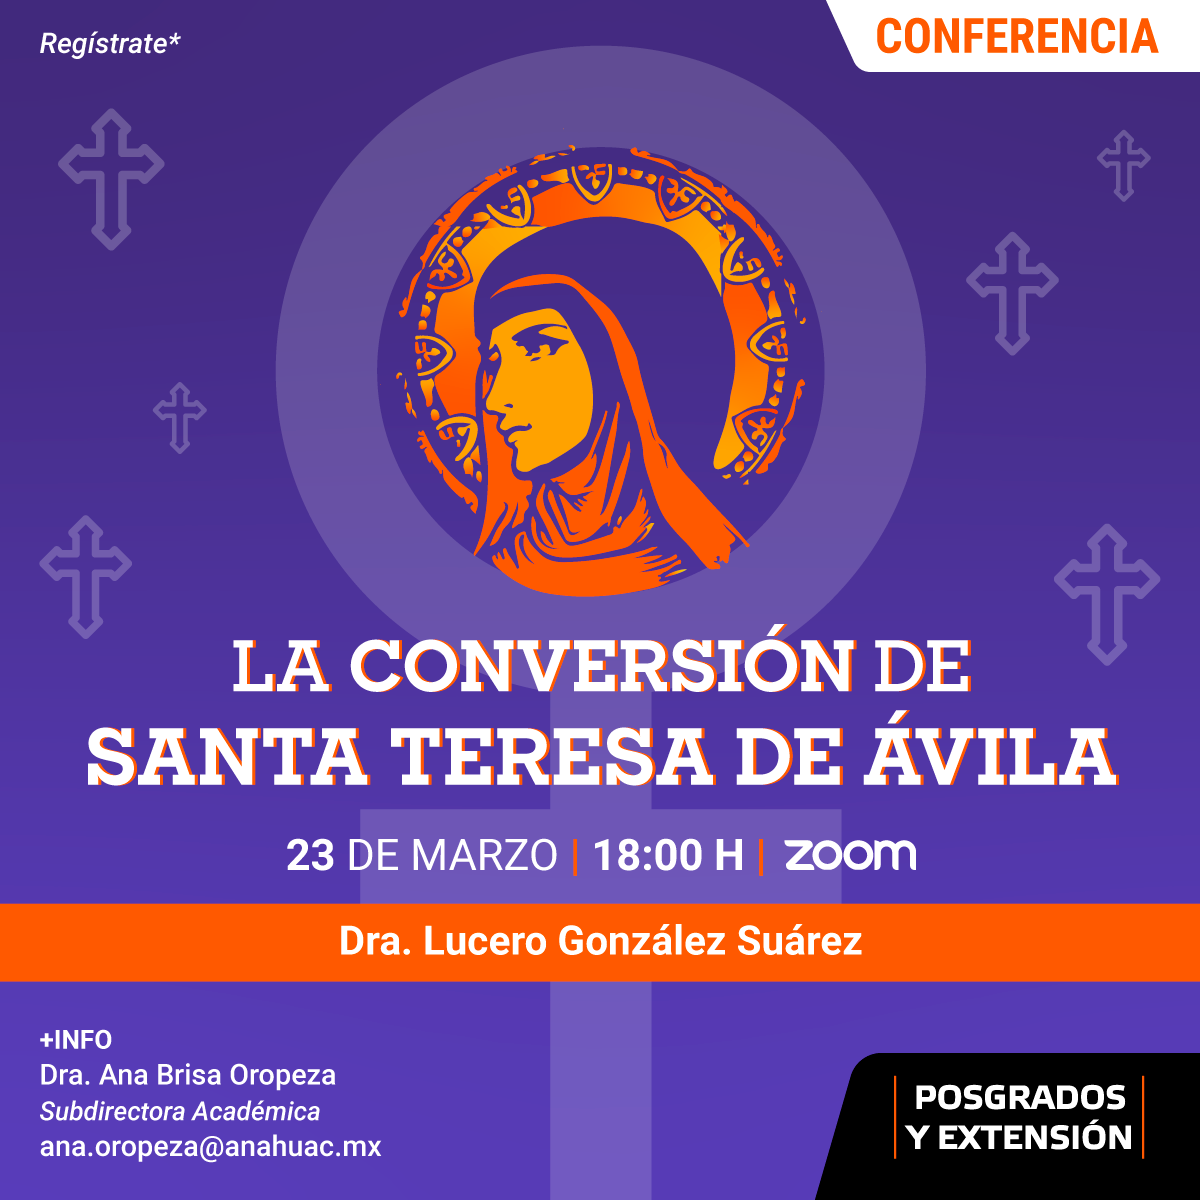 La Conversión de Santa Teresa de Ávila